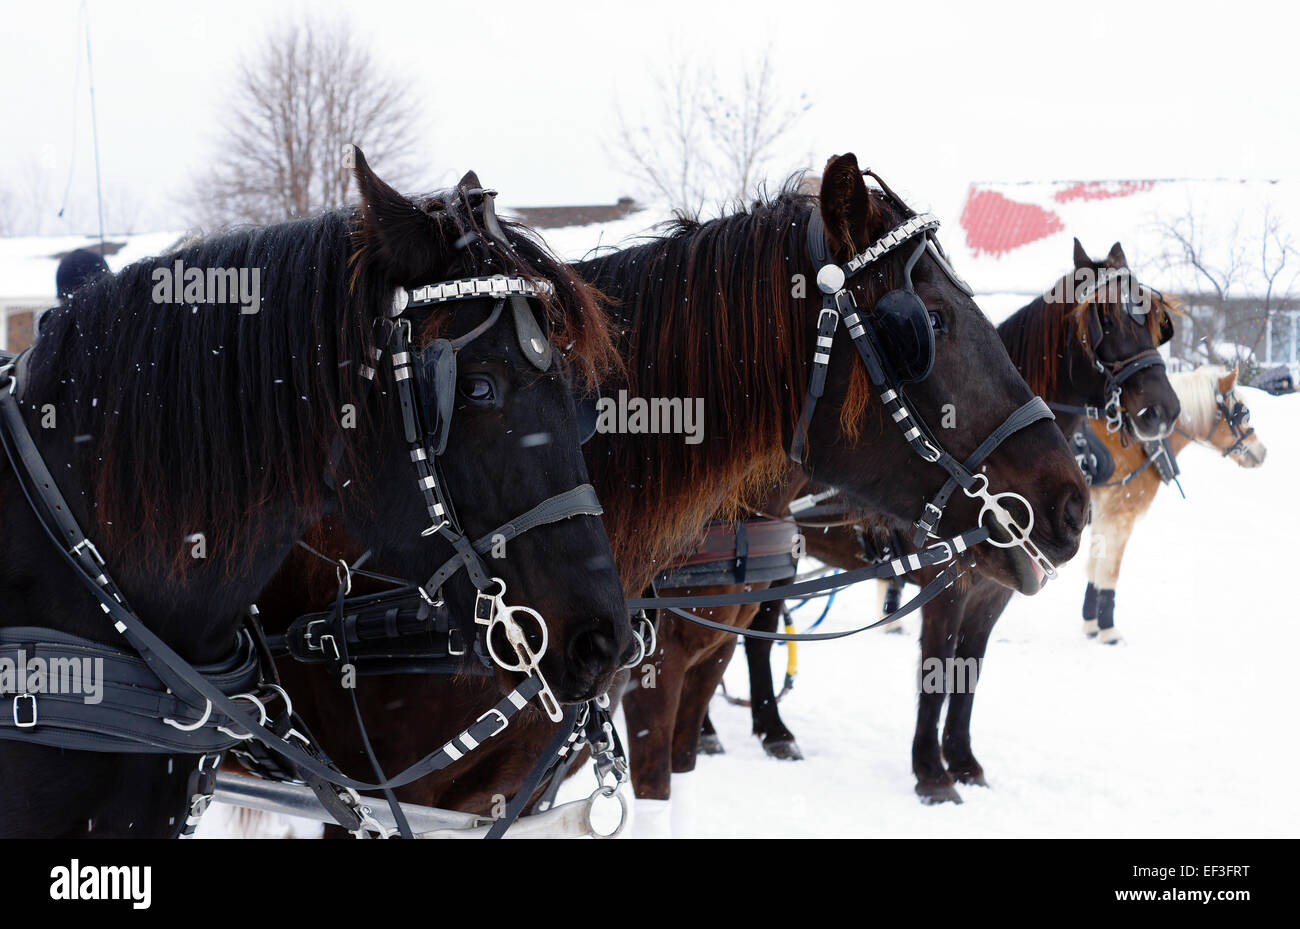 Team der kanadischen Pferde und andere im Winter Hindernis Kegel fahren Wettbewerb Stockfoto